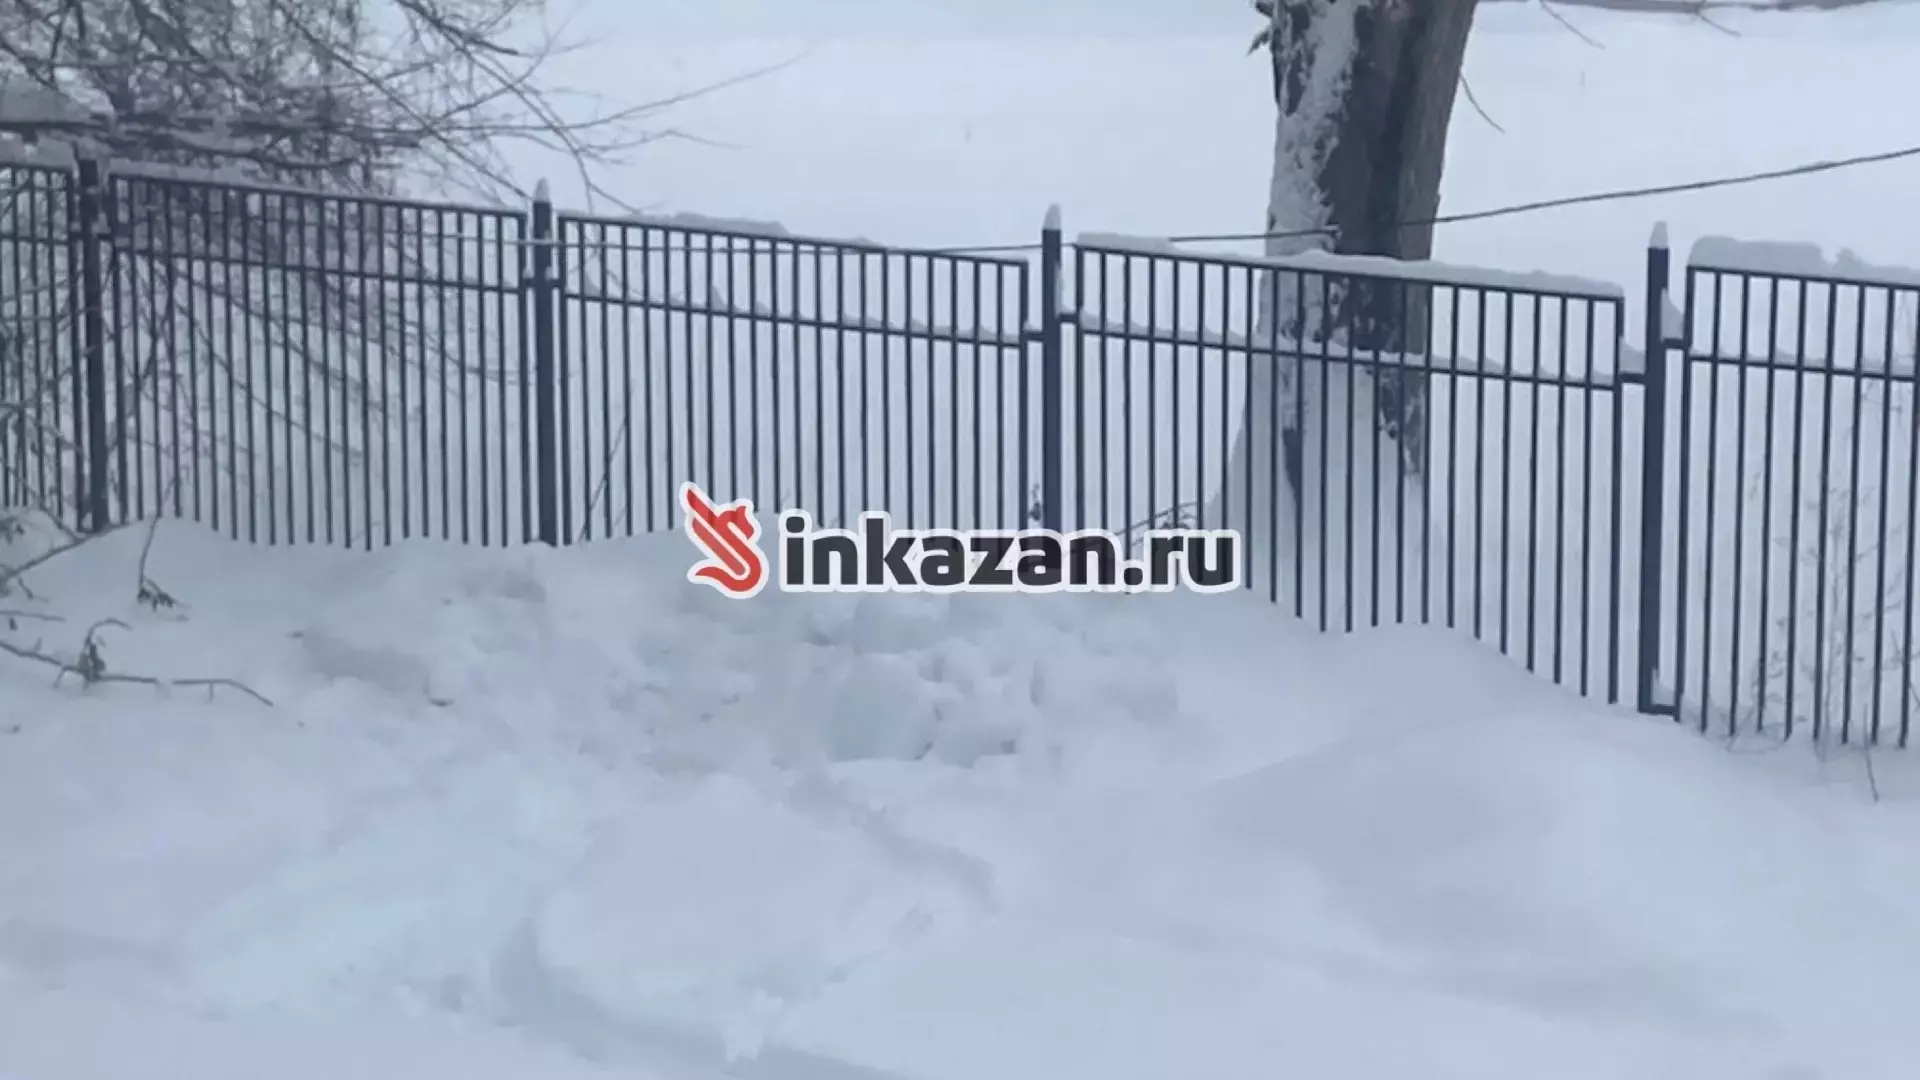 Не внутри, а снаружи: чиновники прокомментировали «безопасность» в школах Казани